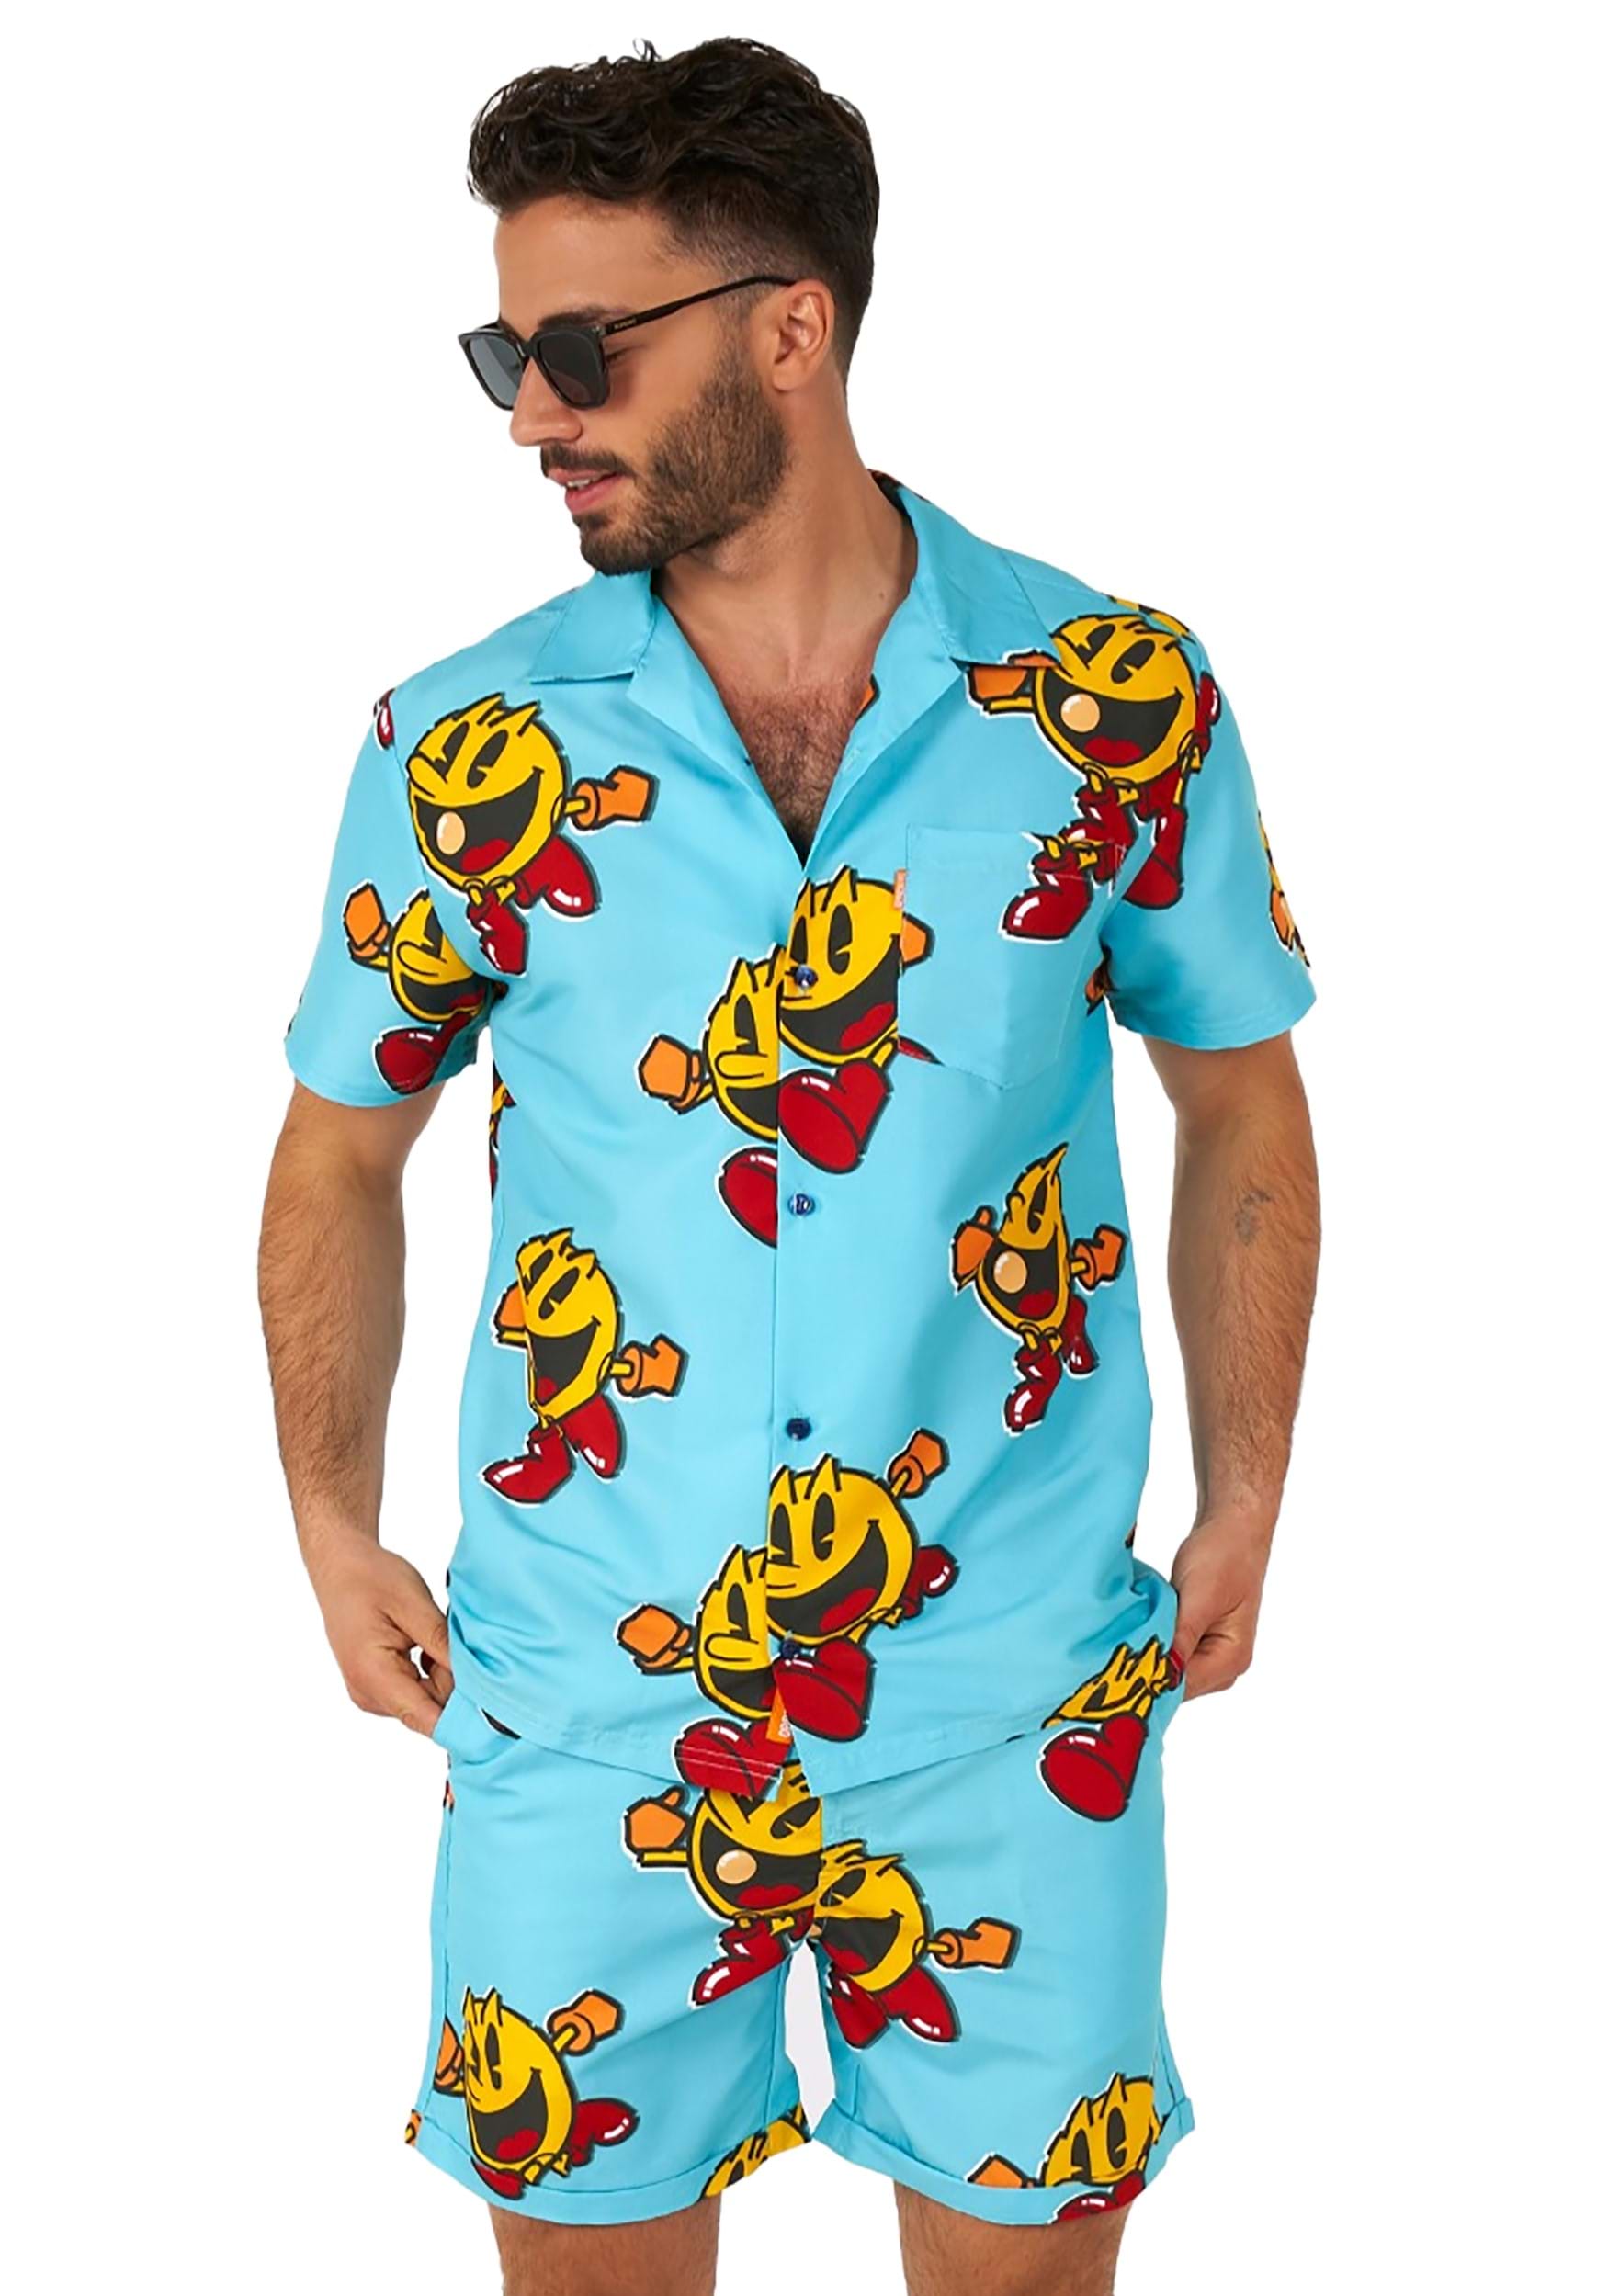 Pac-Man Men’s Waka Waka Swimsuit & Shirt